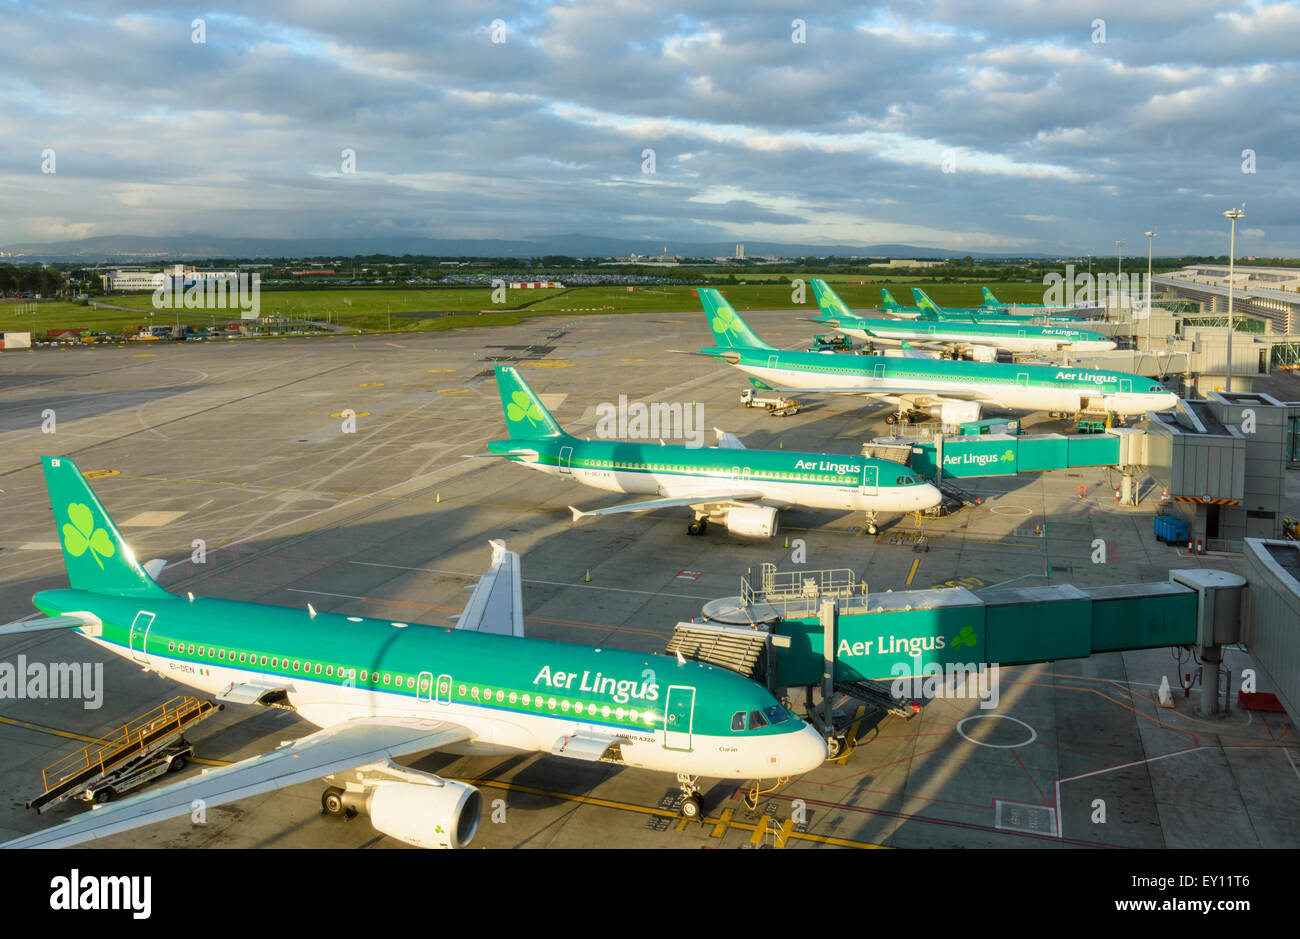 Les avions d'Aer Lingus à l'aéroport de Dublin, Dublin, Irlande Banque D'Images